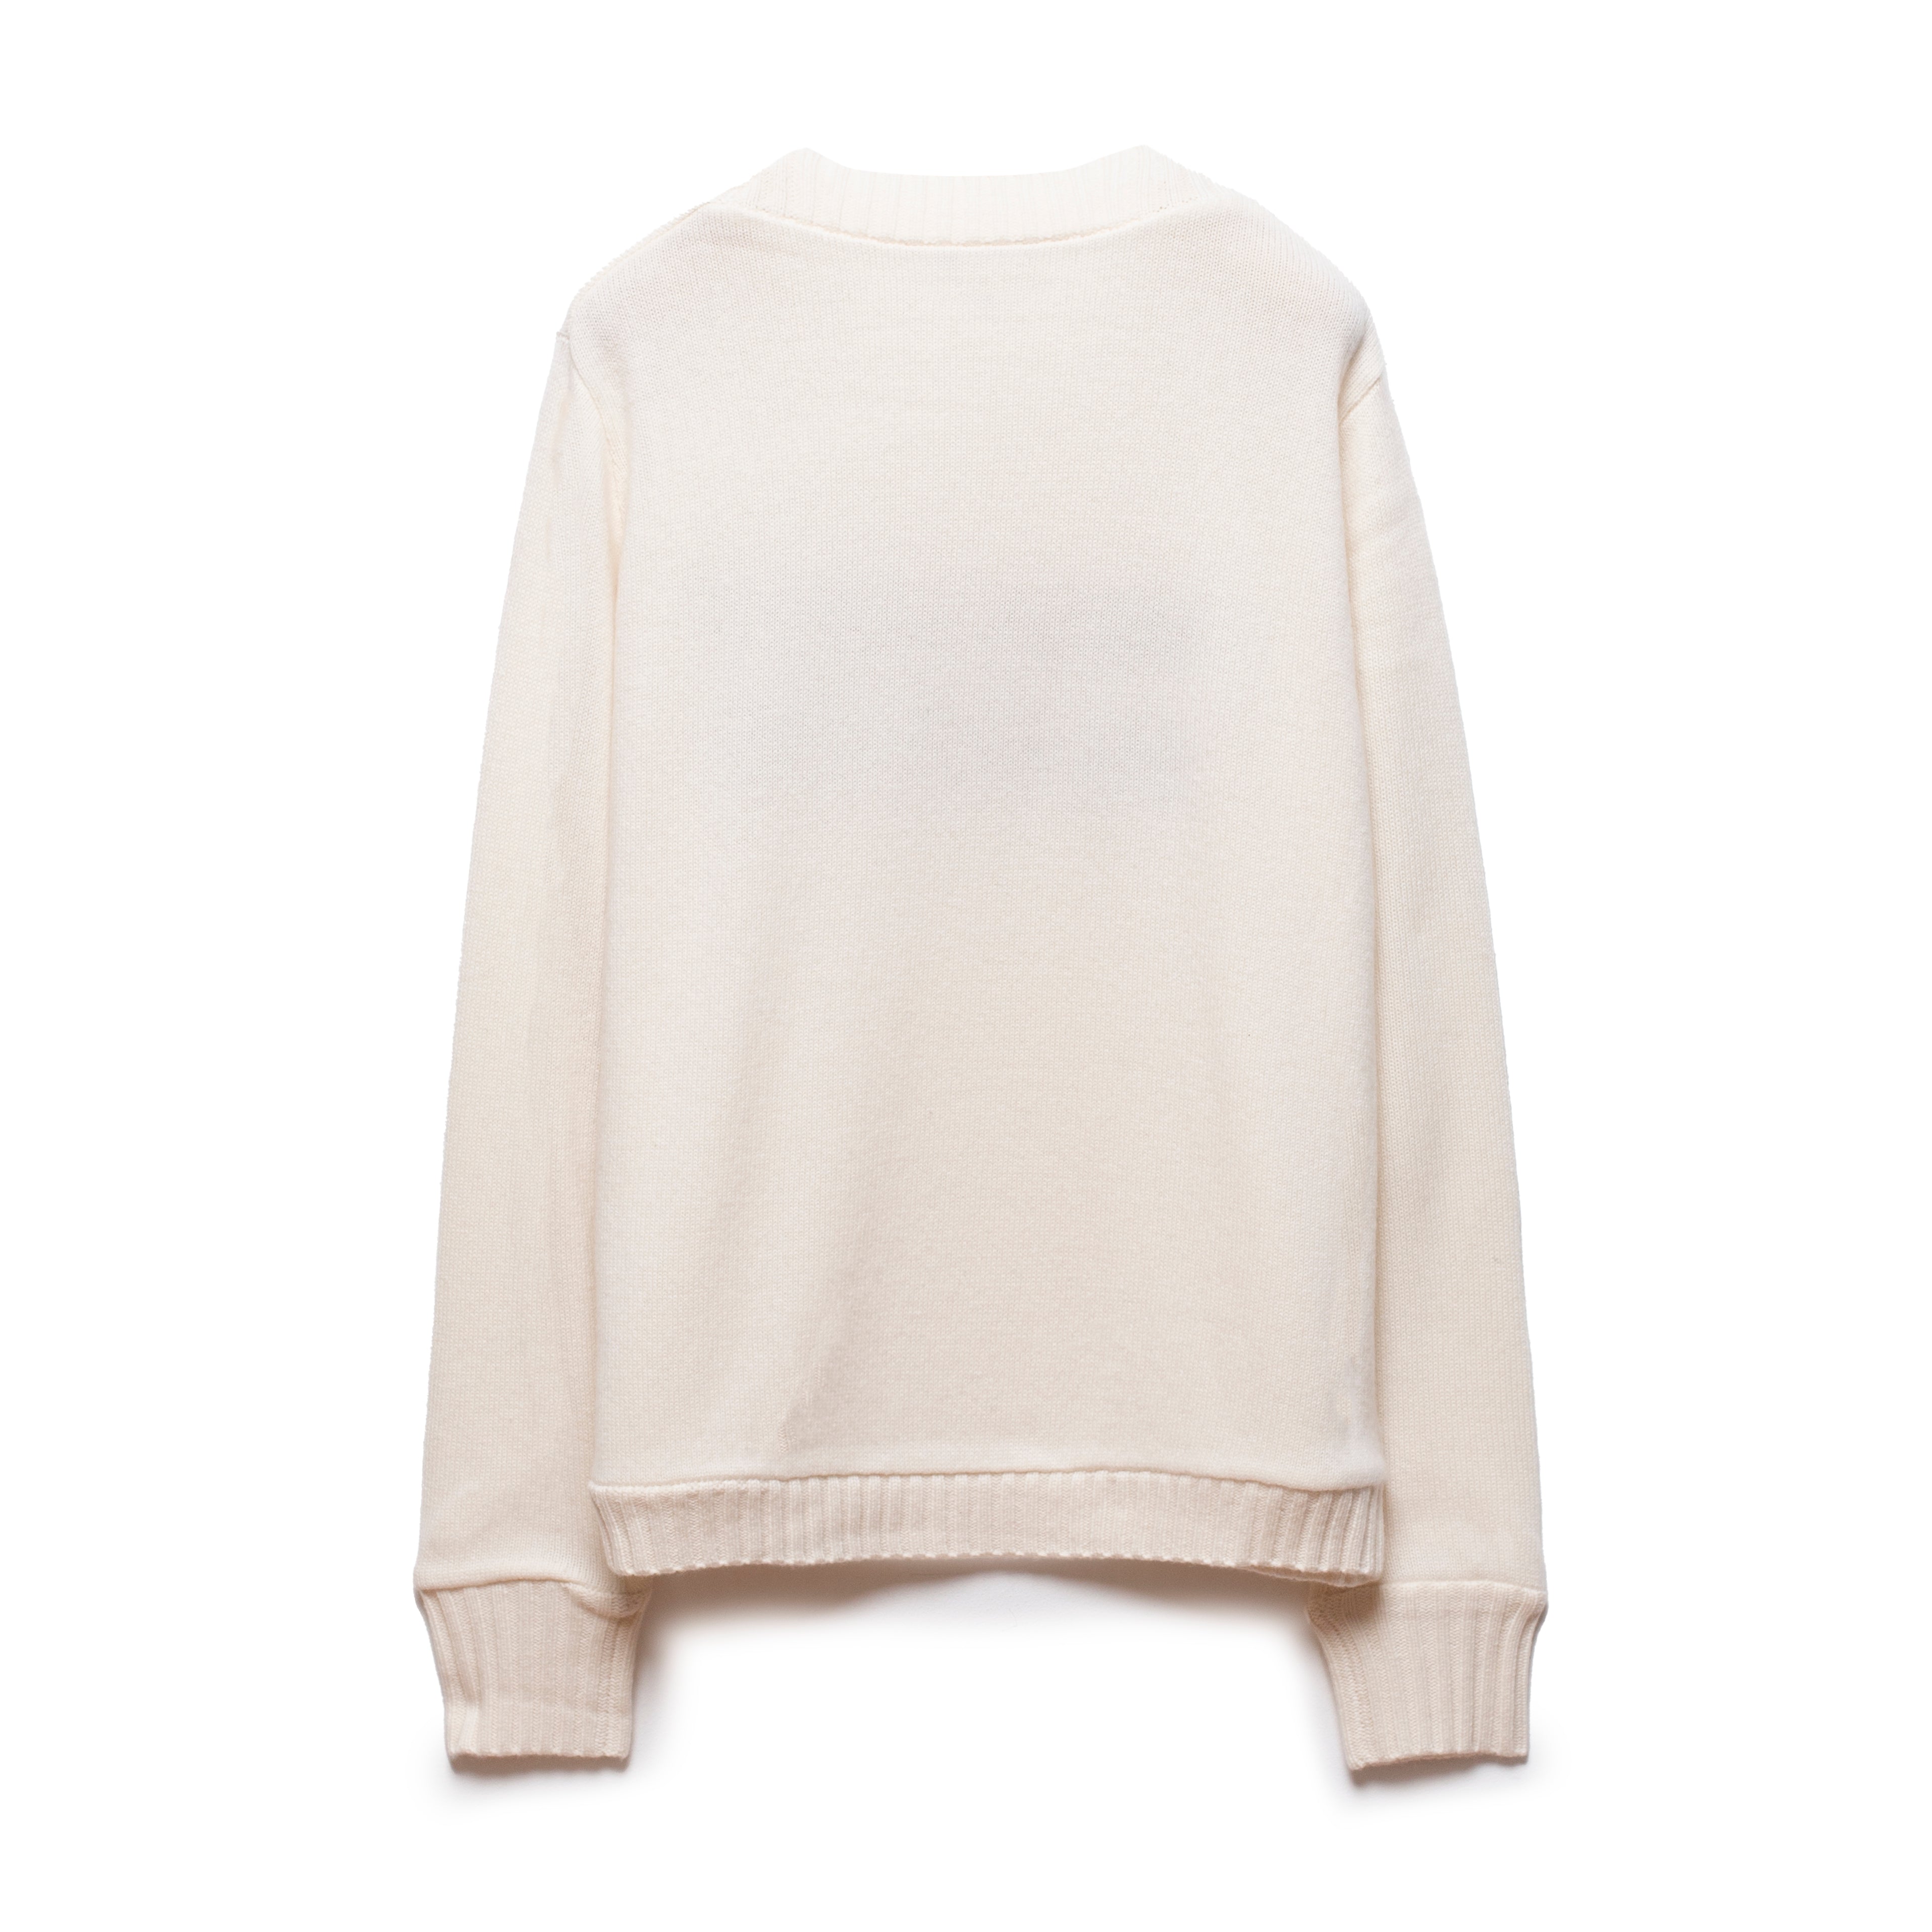 "No More Drama" Sweater Off White